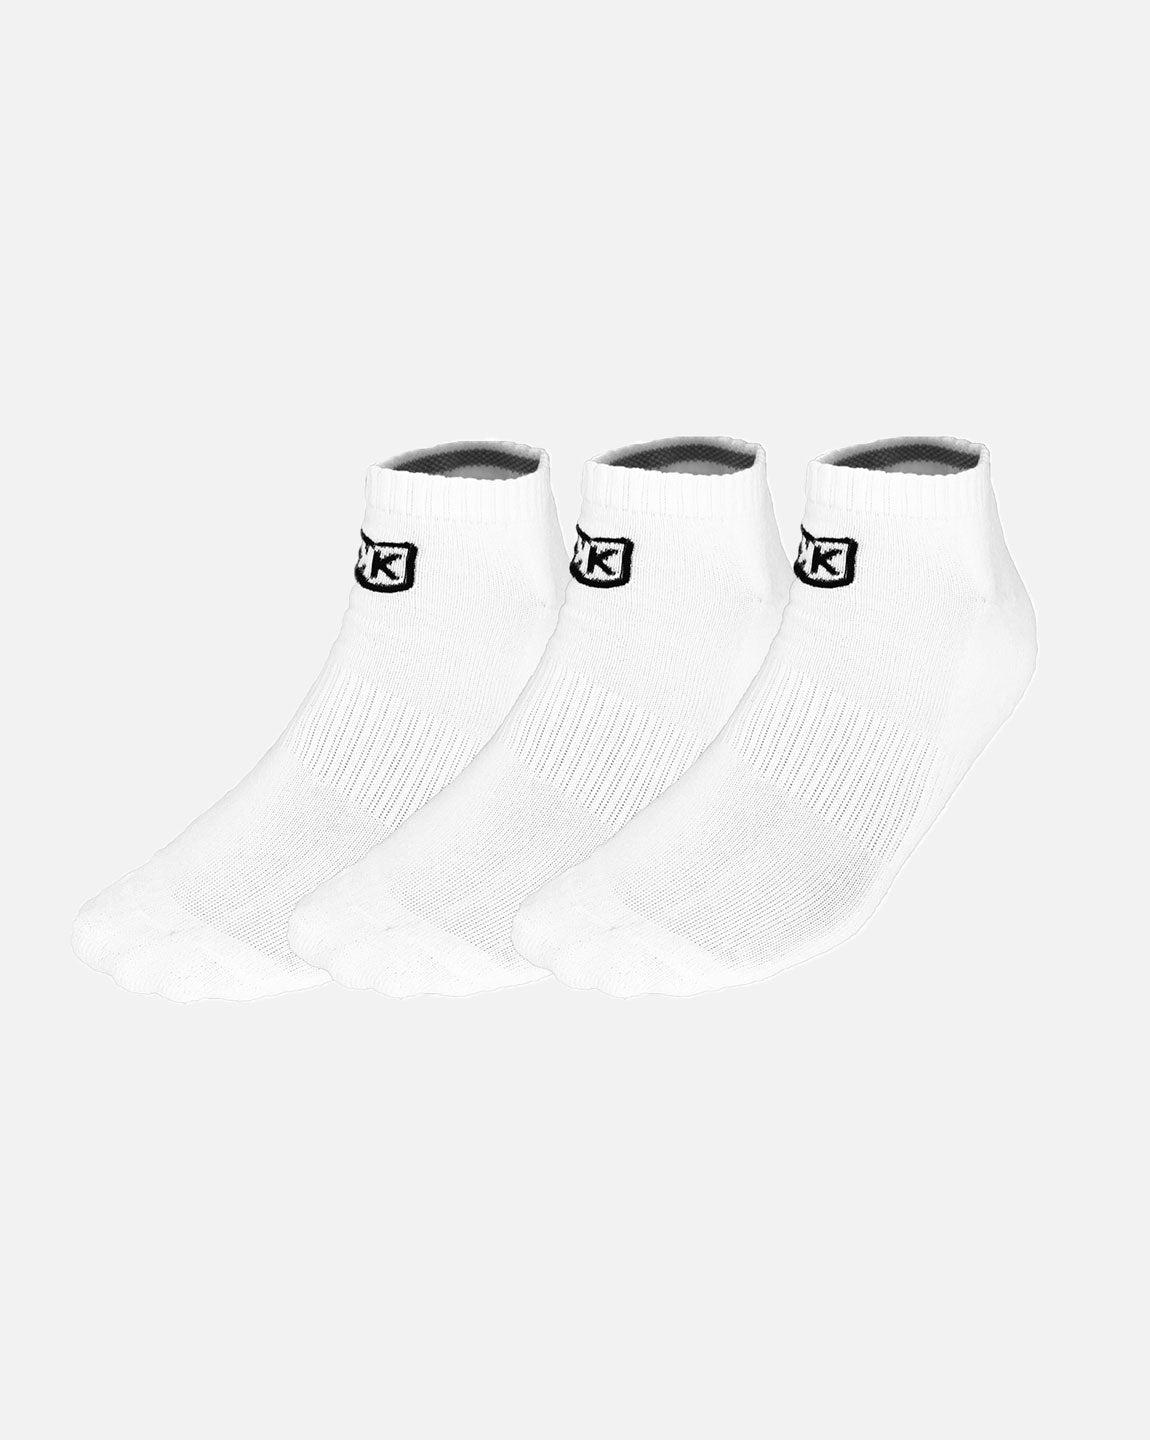 Packung mit 3 Paar kurzen FK-Socken – Weiß – Footkorner